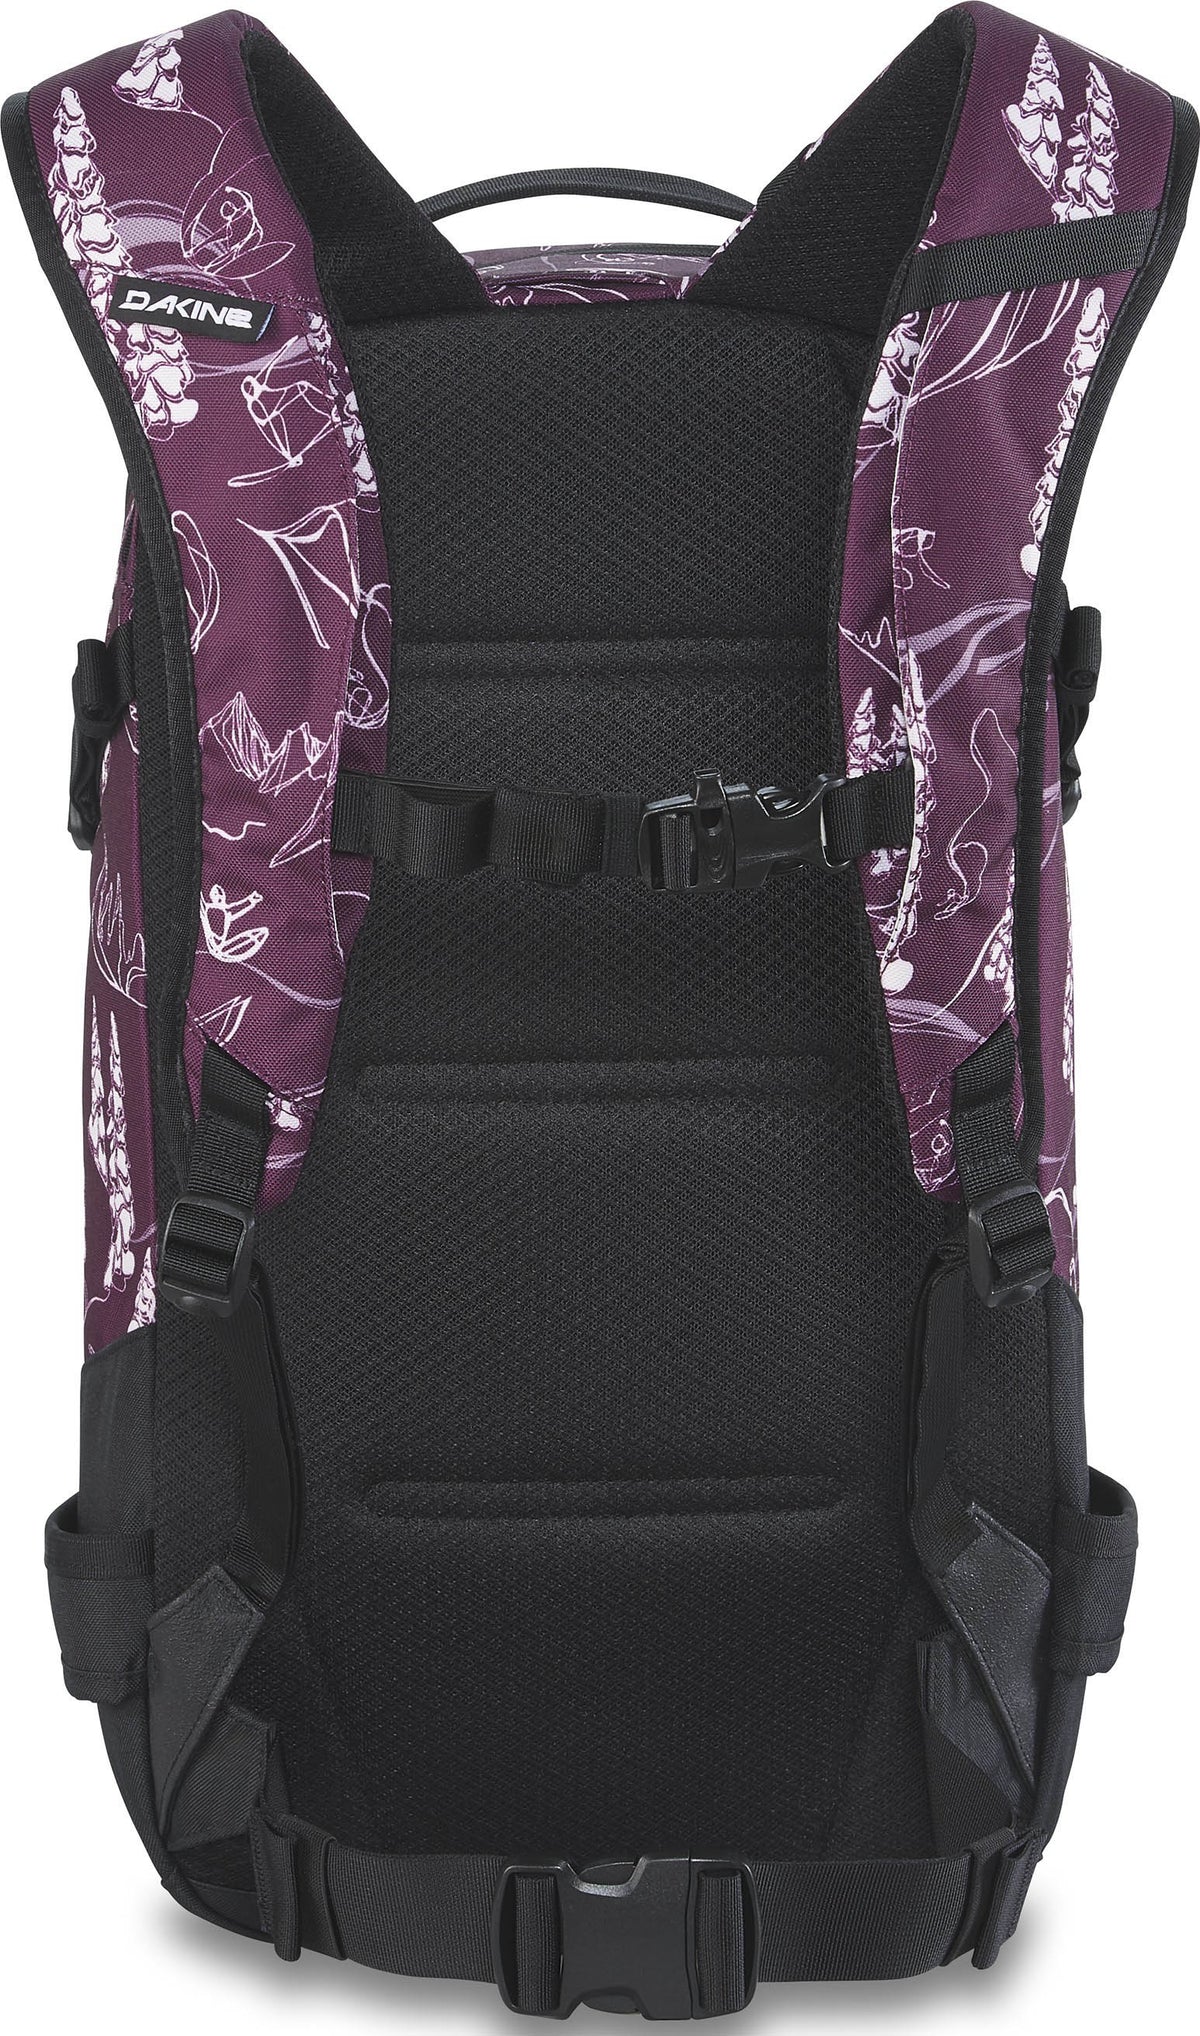 Dakine Women's Heli Pro 20L Backpack - Grapevine